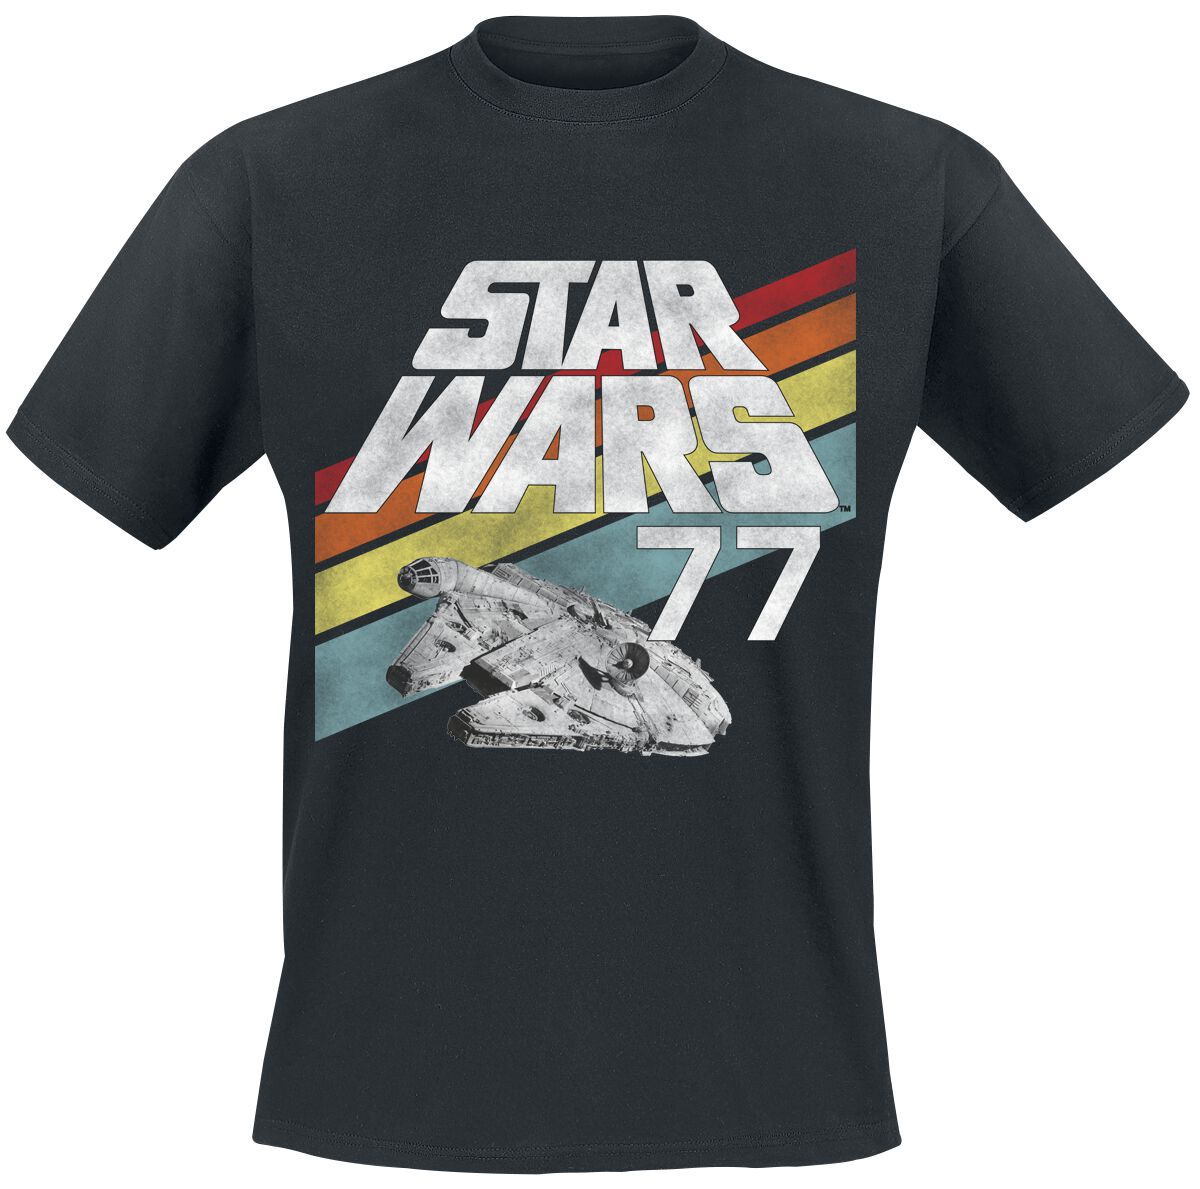 Star Wars T-Shirt - Star Wars - 77 - S bis XXL - für Männer - Größe XXL - schwarz  - EMP exklusives Merchandise!